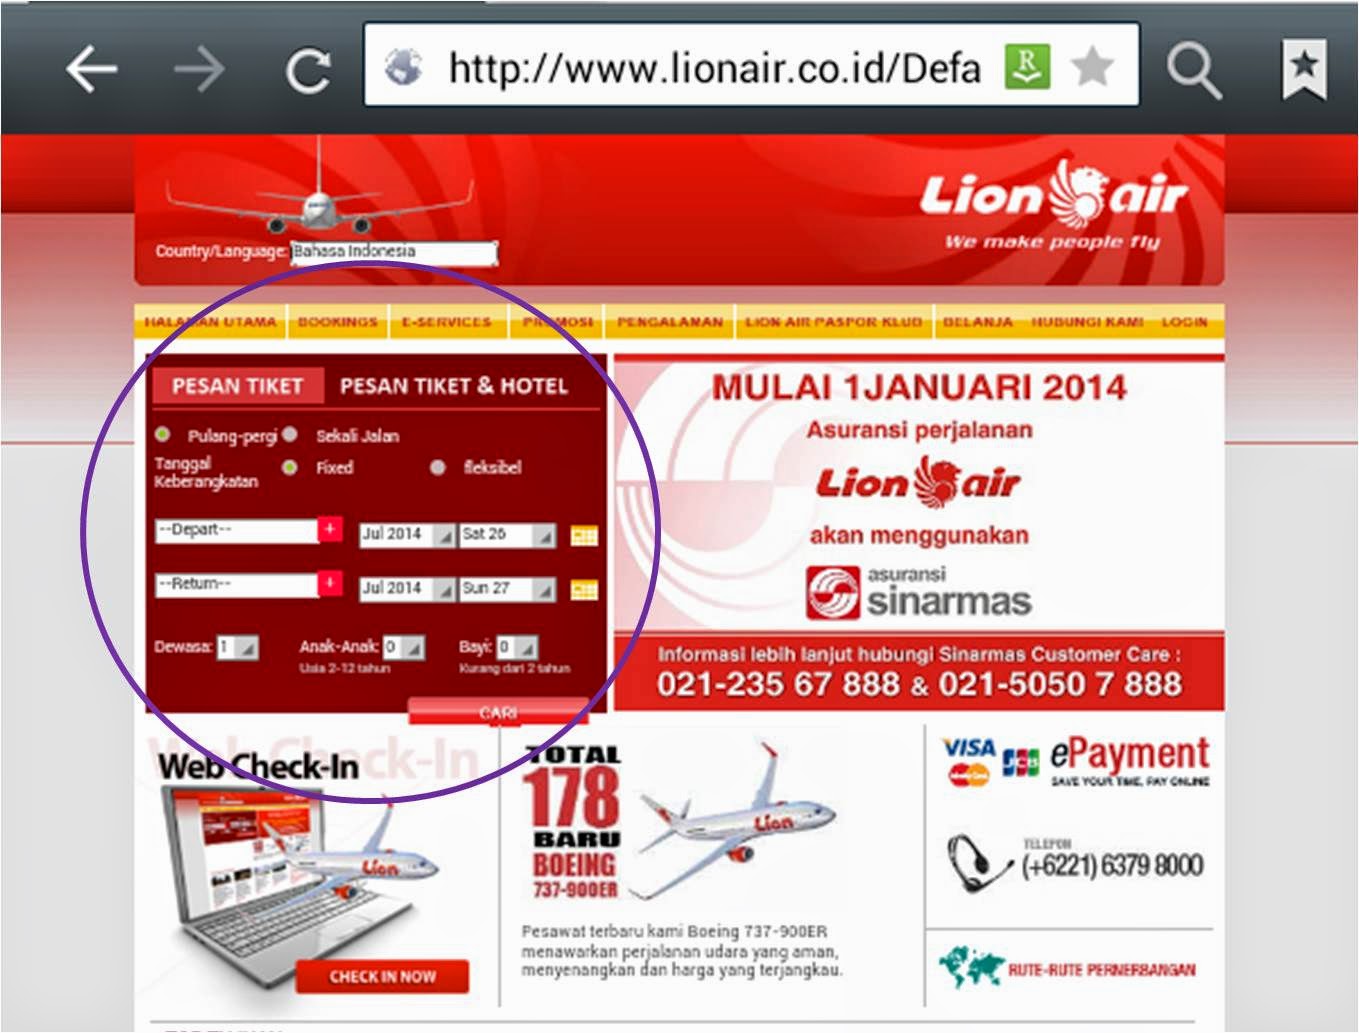 Cara Membeli Tiket Lion Air Online